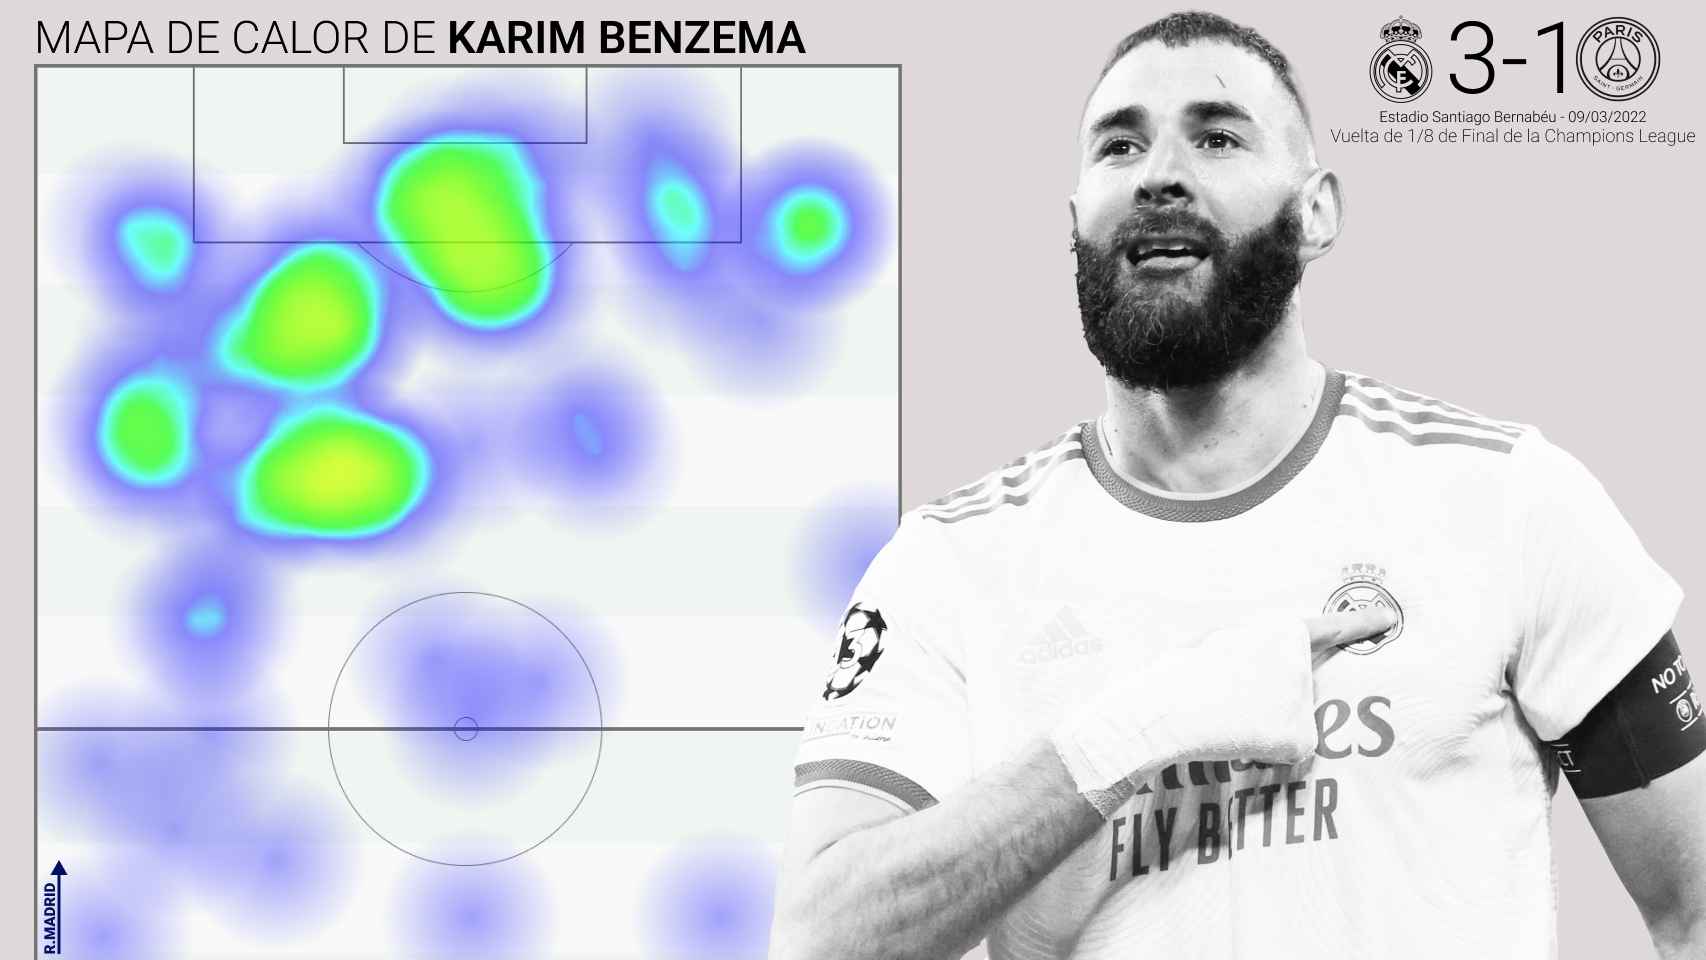 Mapa de calor de Karim Benzema durante el Real Madrid - PSG